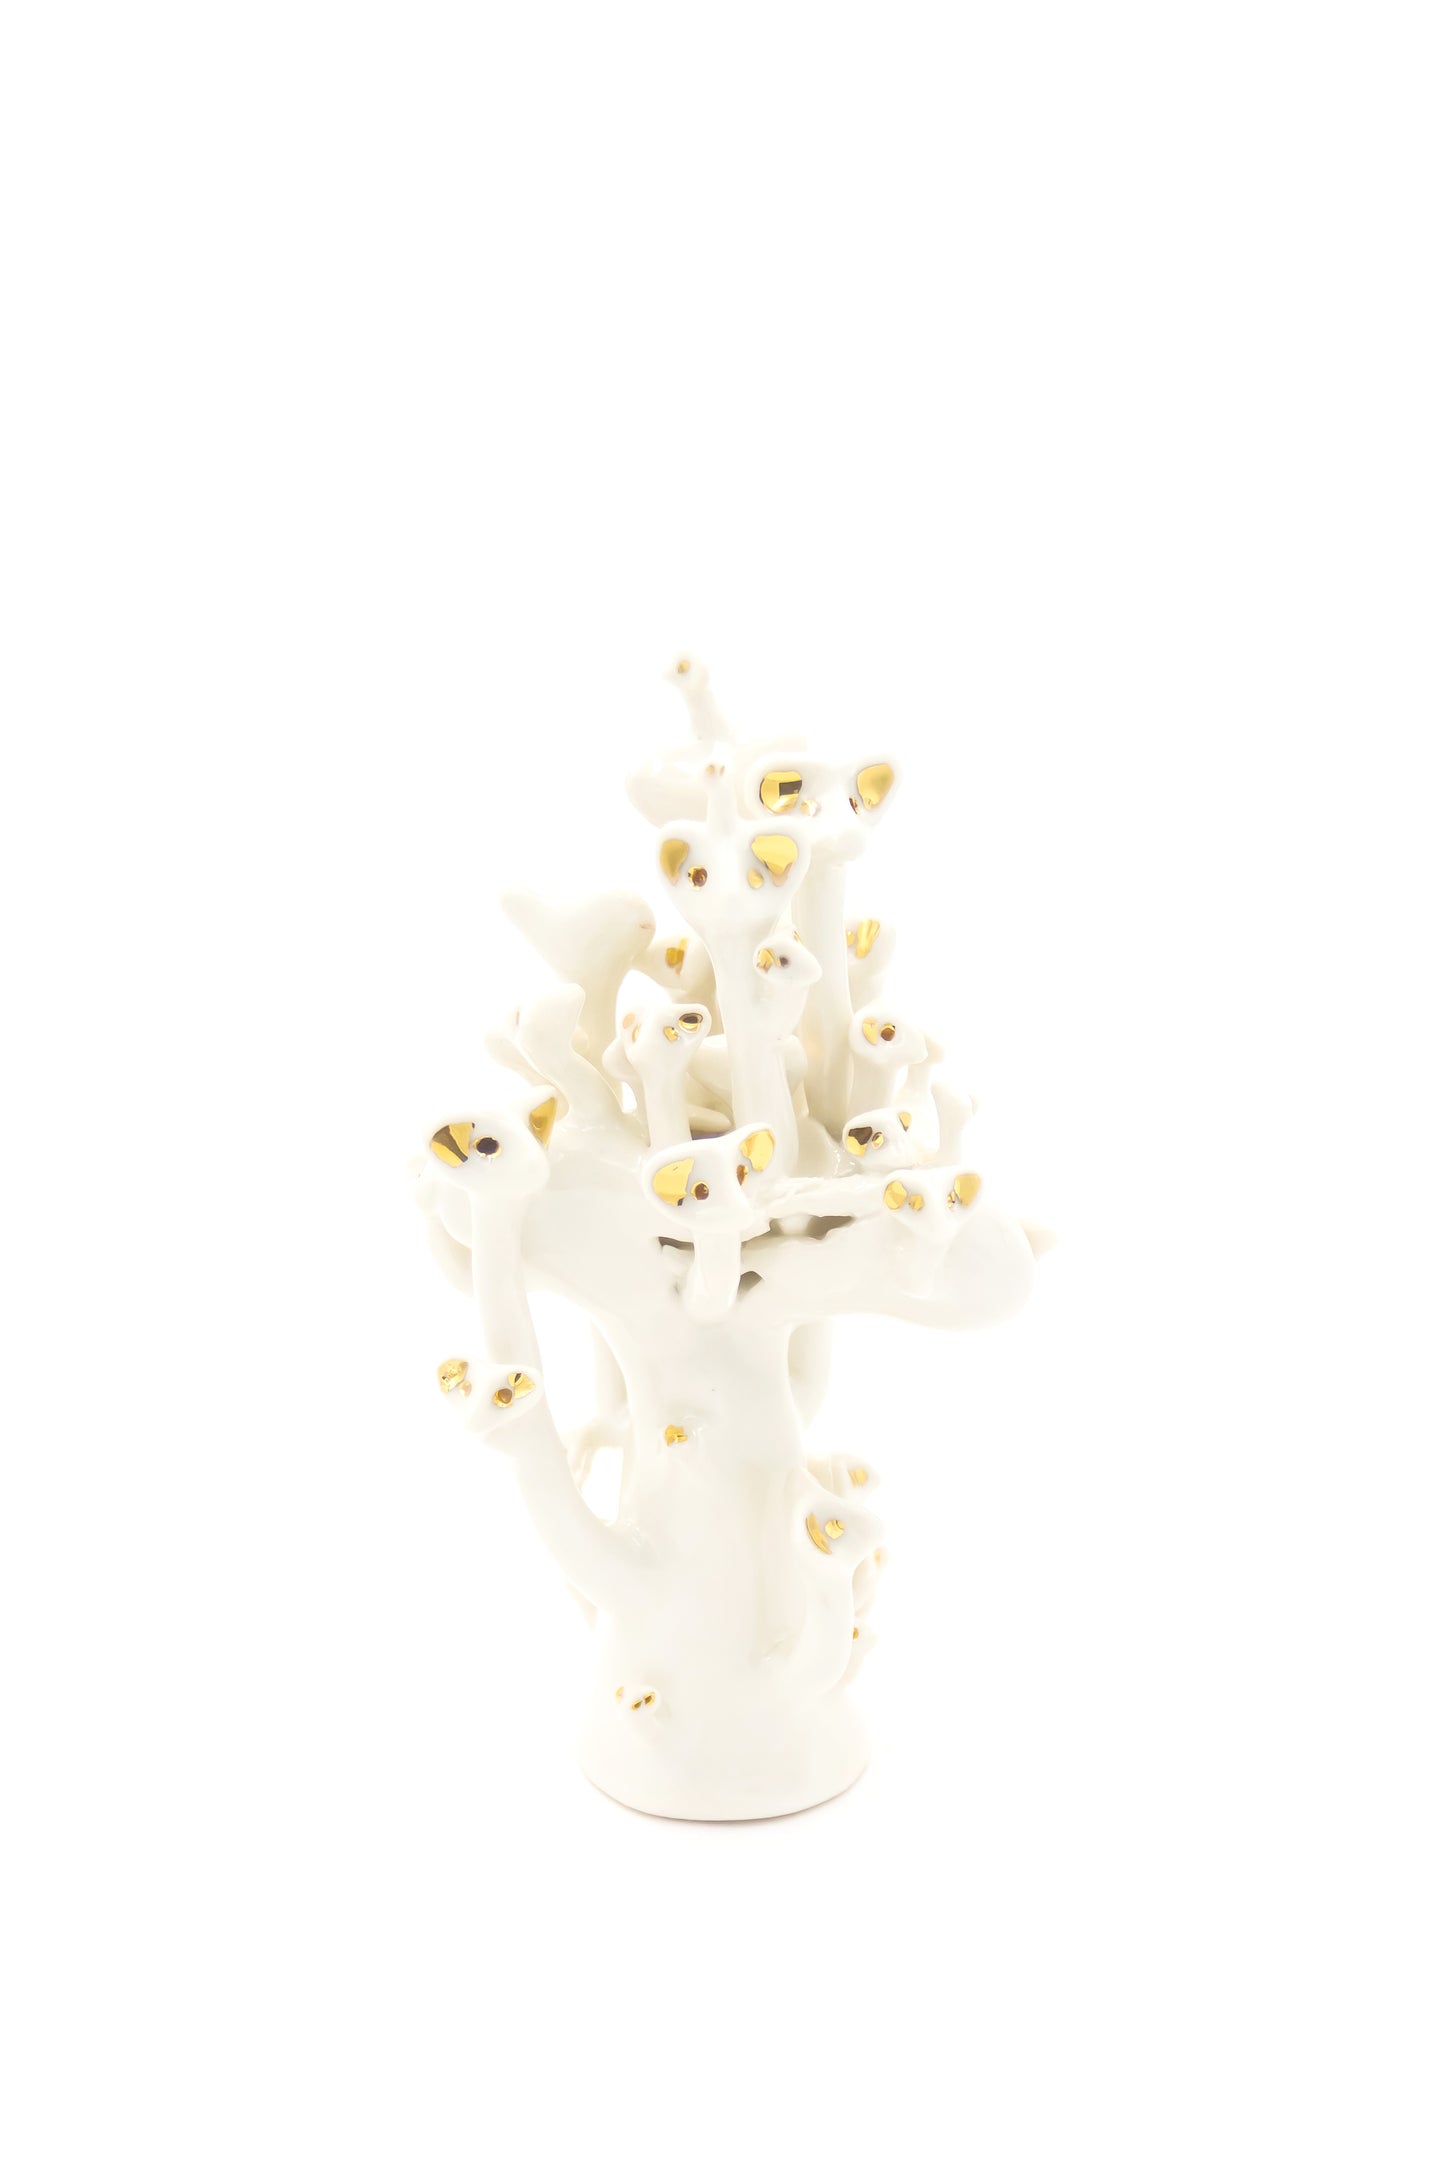 Werling pierworodny porcelanowy w kolorze białym ze złoceniem